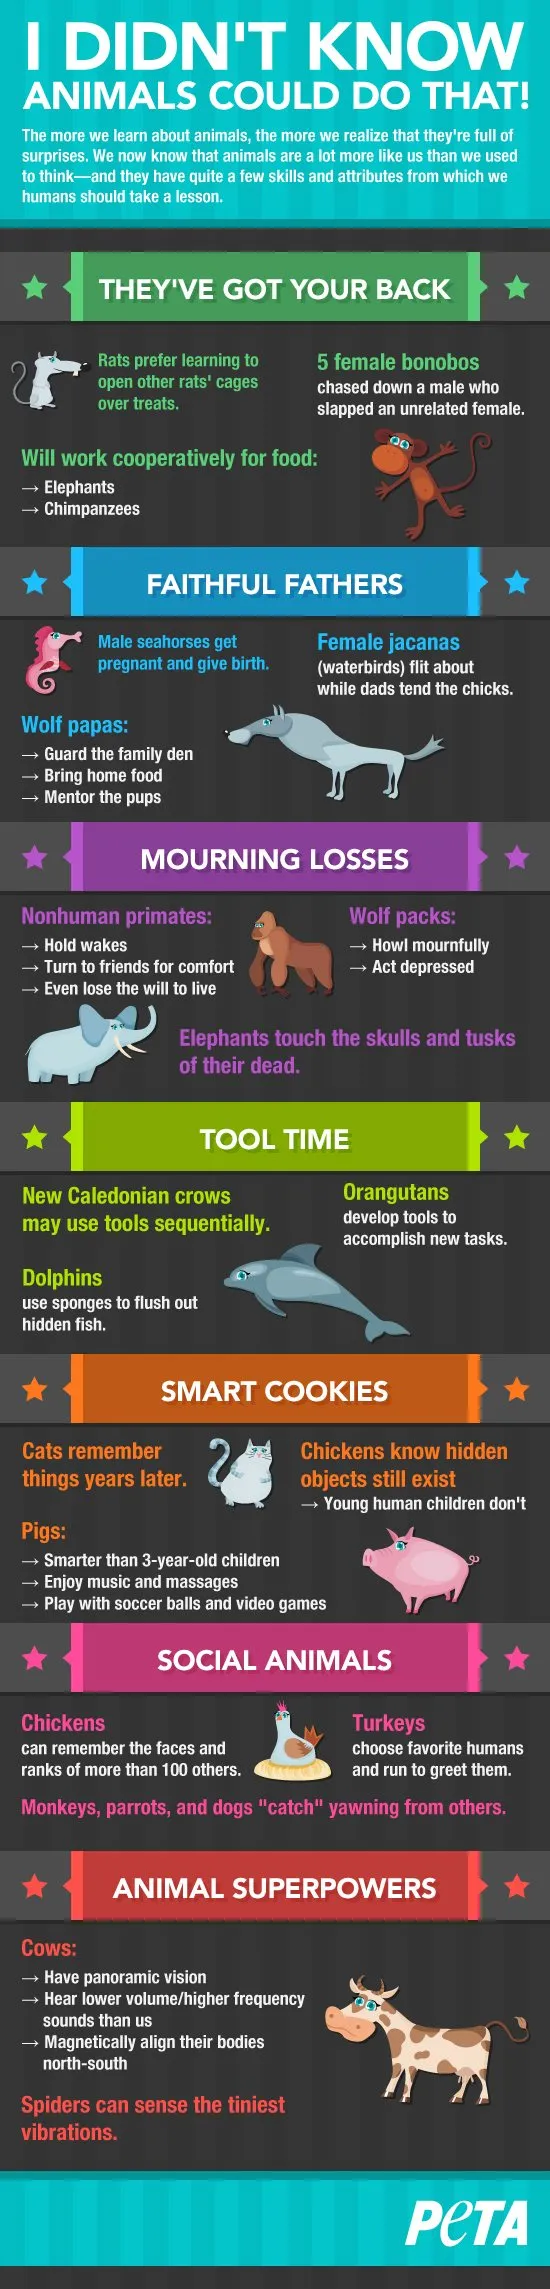 Πράγματα που κάνουν τα ζώα και δεν τα ξέρουμε [infographic]